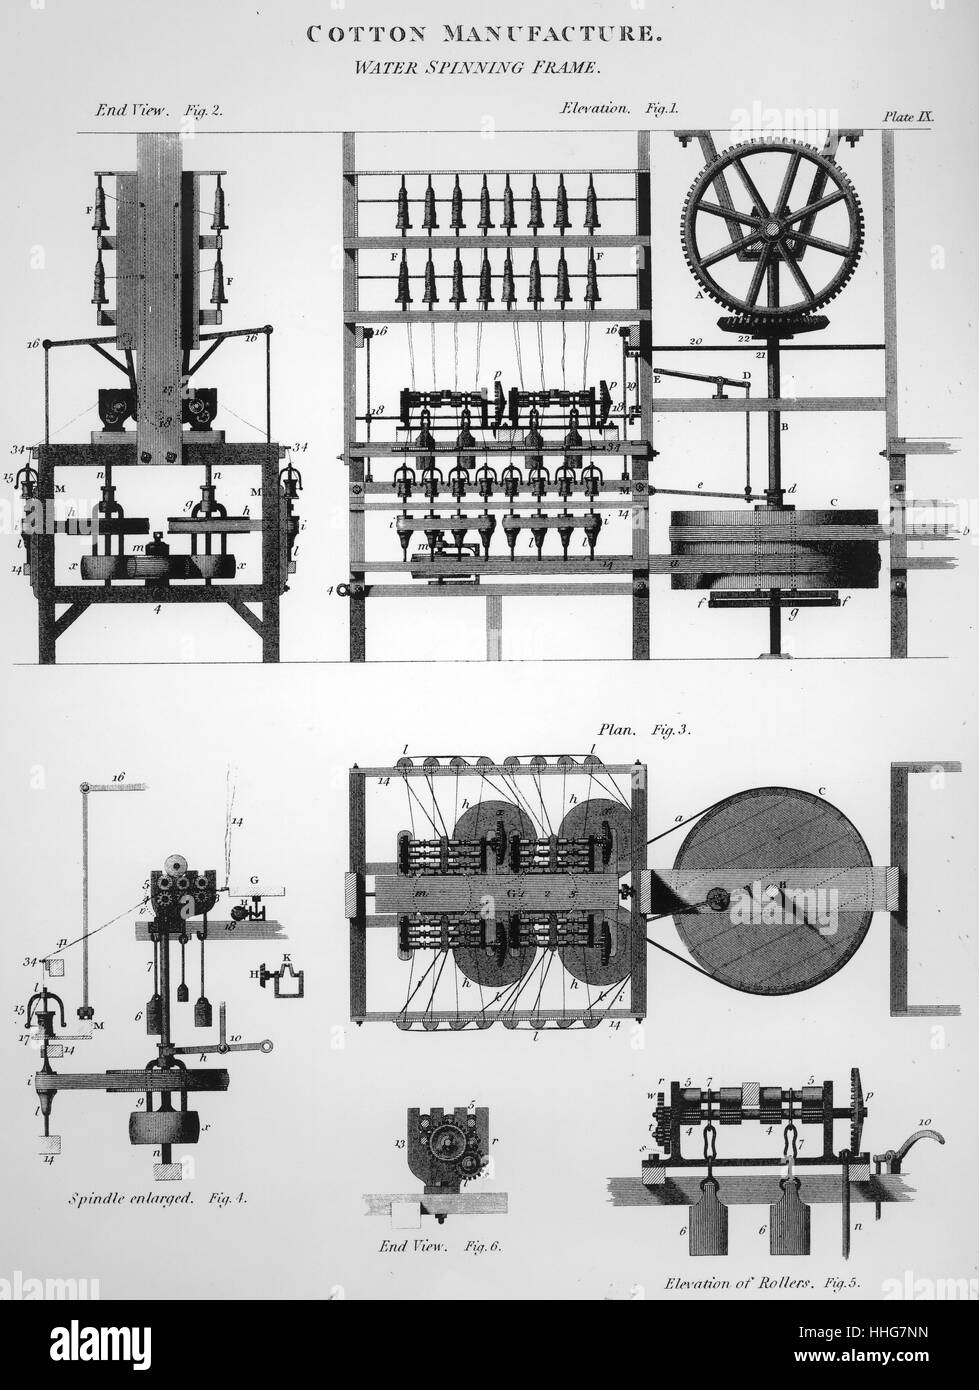 L'eau du schéma d'Arkwright cadre ; 1878. L'eau est le nom donné à un châssis tournant fonctionnant à l'eau qui a été un moyen facile de créer des fil de coton. La première fois que la machine a été utilisée en 1768. Il a été en mesure de tourner 128 threads à la fois ; ce qui était le plus facile et plus rapide que jamais. Il a été mis au point par Richard Arkwright, qui a breveté la technologie en 1767 Banque D'Images